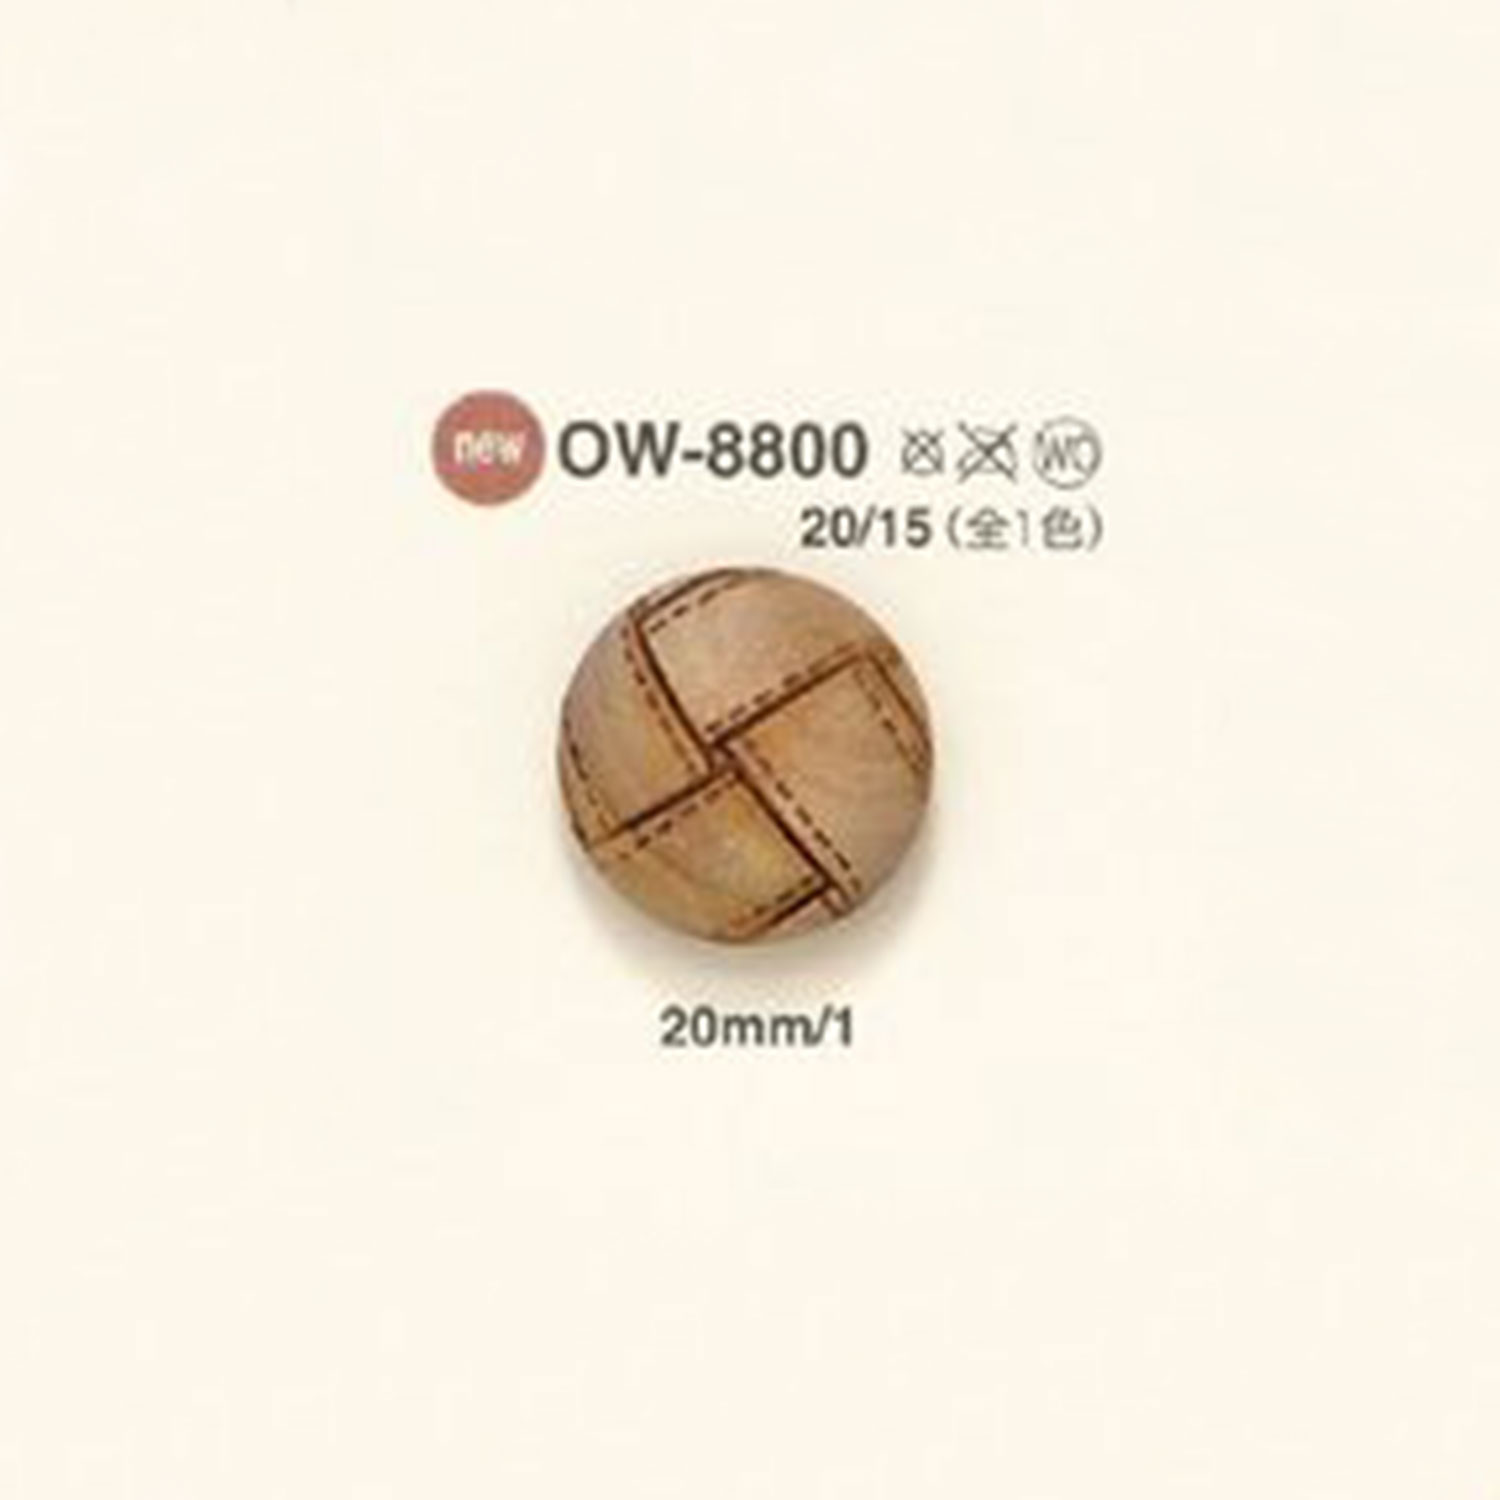 OW-8800 木制纽扣 爱丽丝纽扣